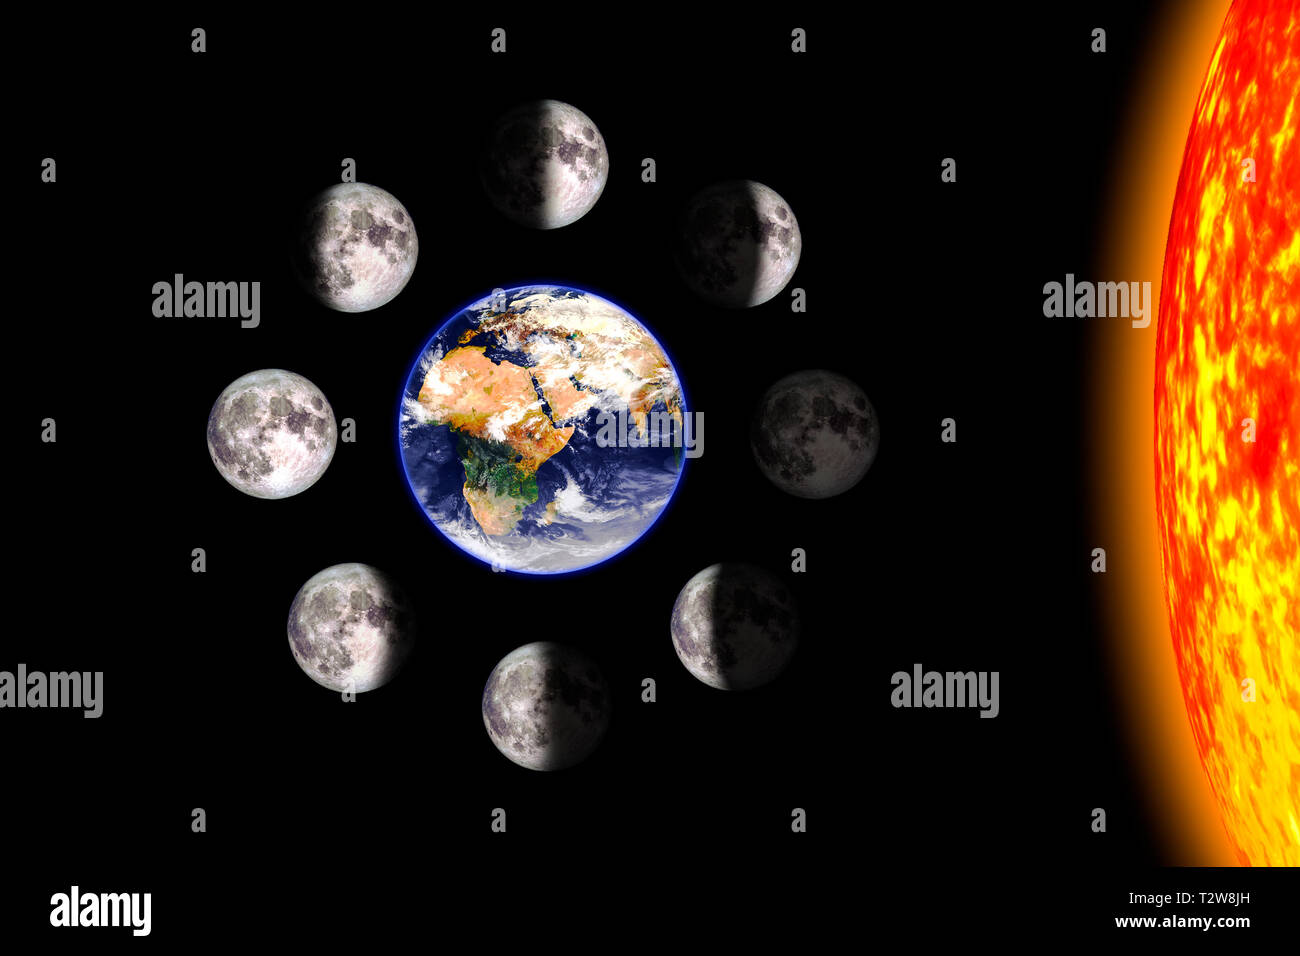 Mond oder Mondphasen Poster. Die acht Schritte des Mondzyklus um die Erde. Schwarzen Hintergrund. 3D-Render Abbildung ohne Text. Erdoberfläche tex Stockfoto